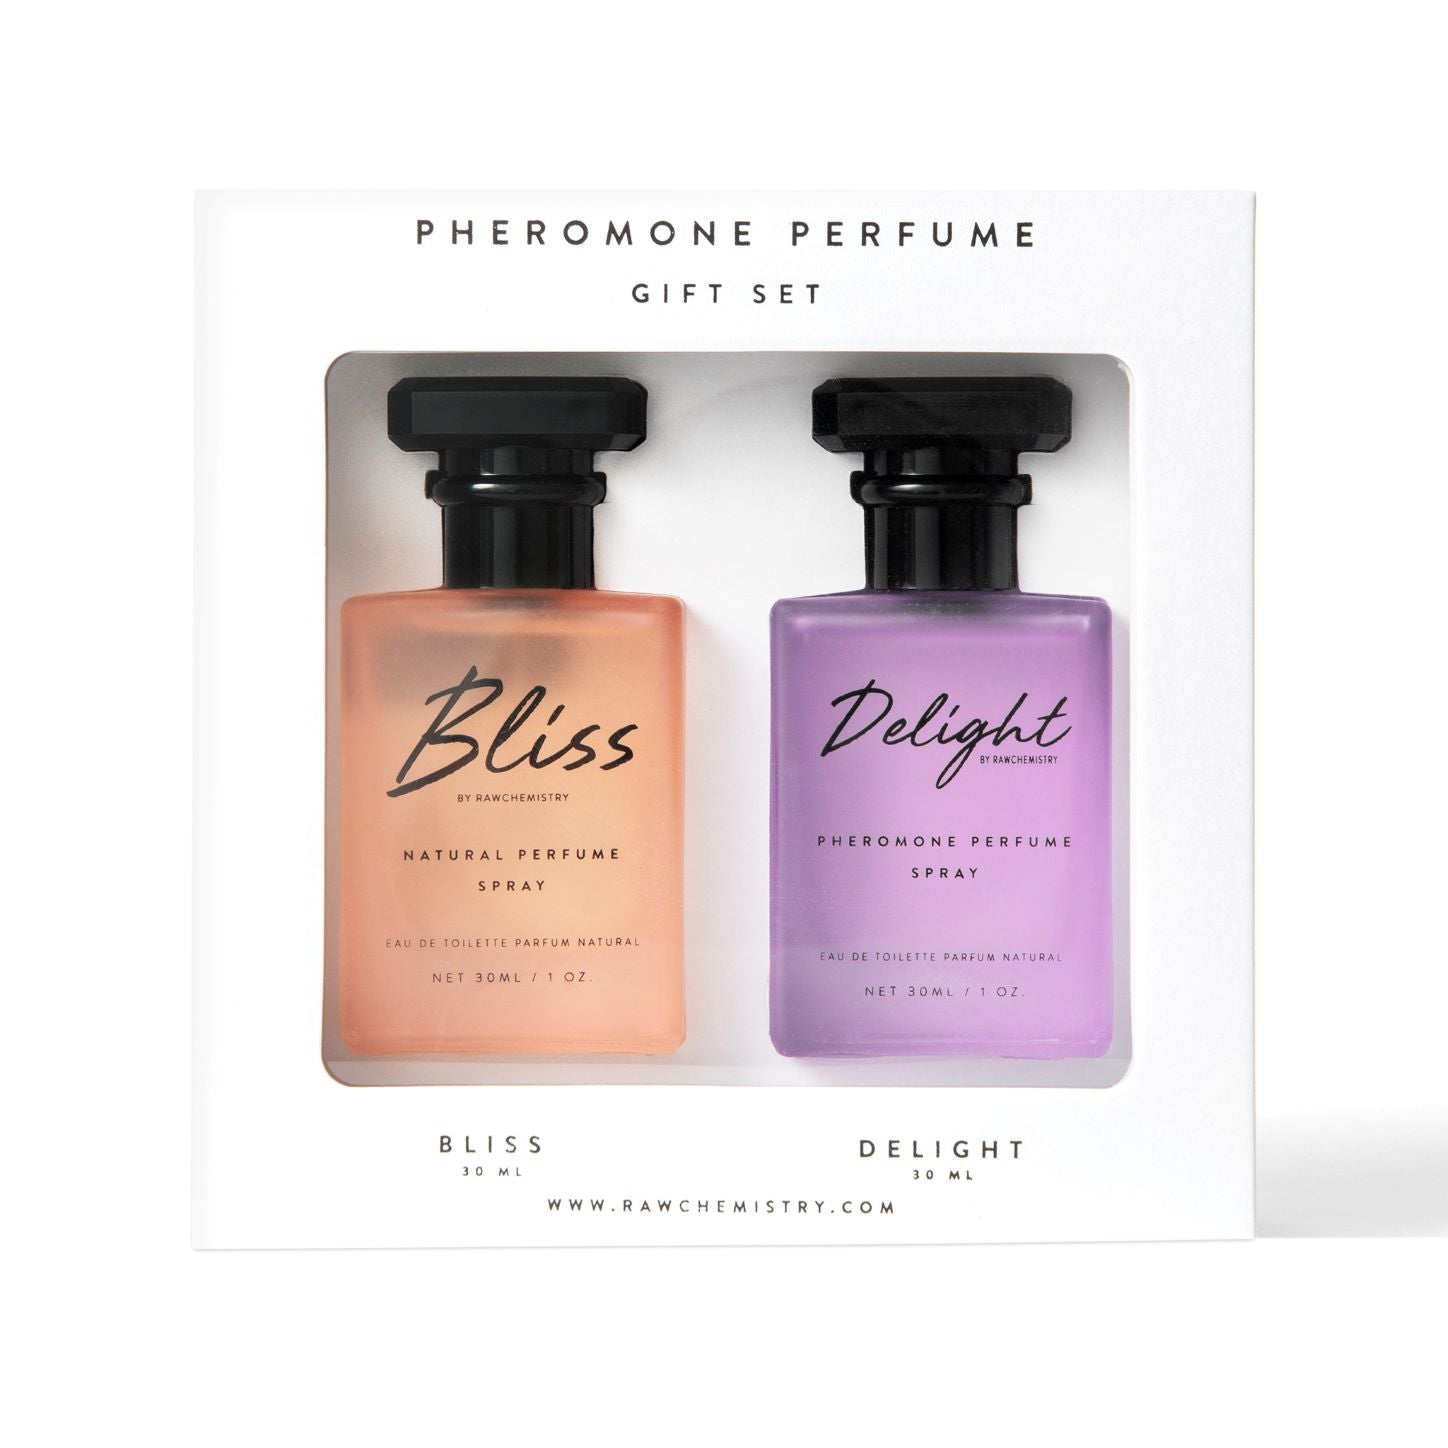 Bliss & Delight Pheromone Perfume Gift Set